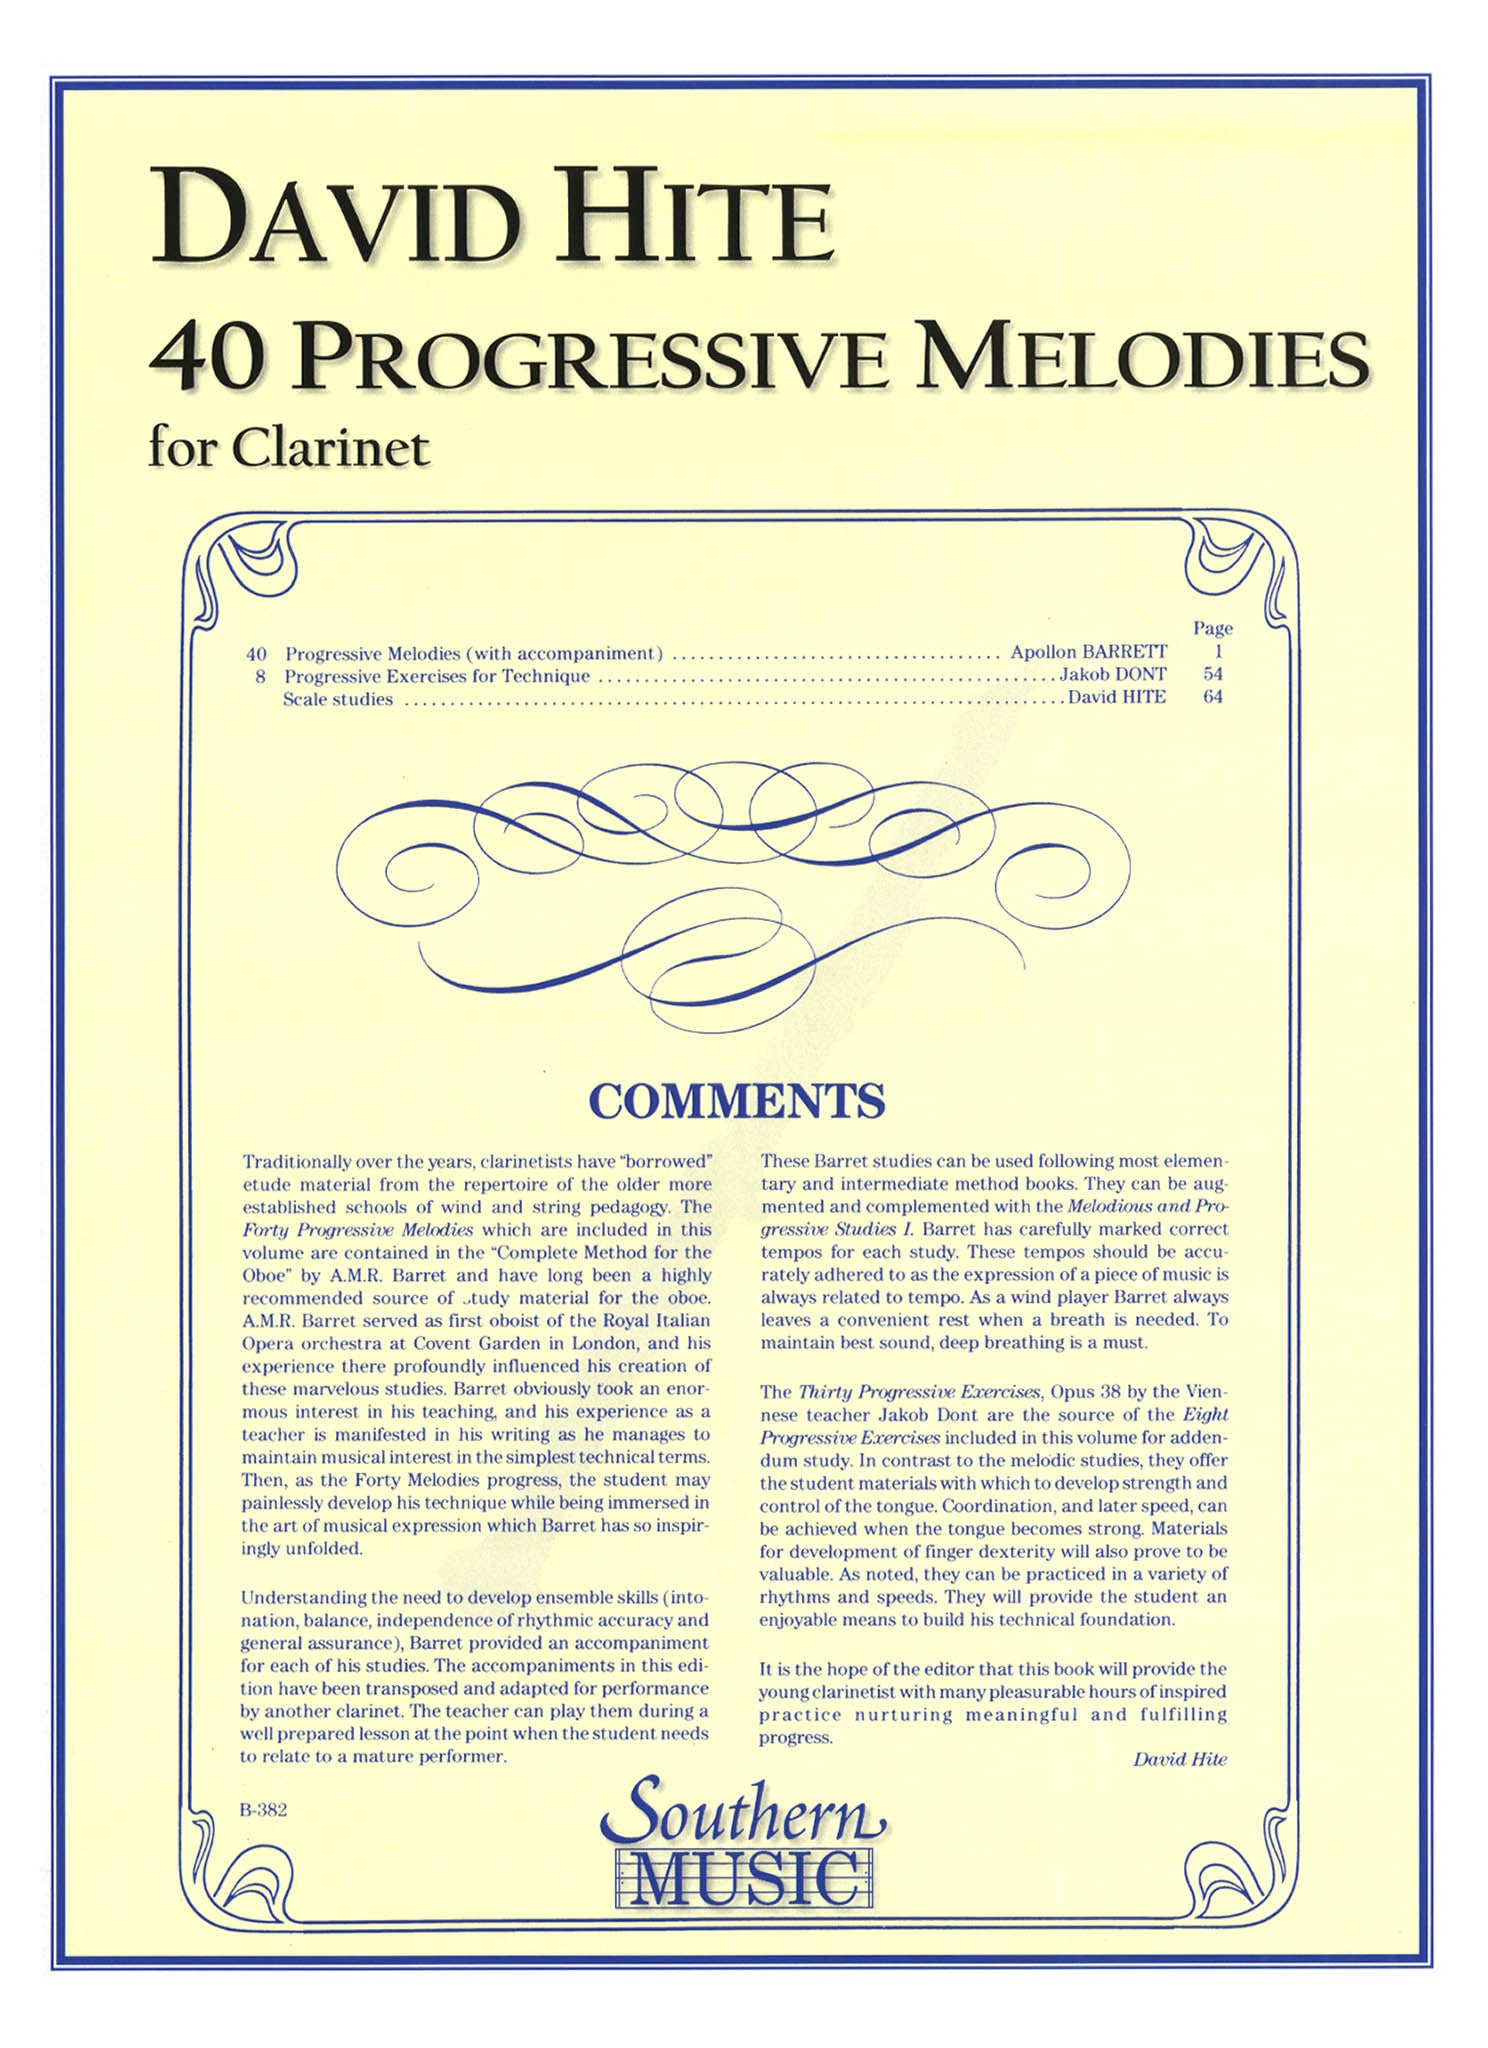 David Hite 40 Progressive Melodies for Clarinet cover